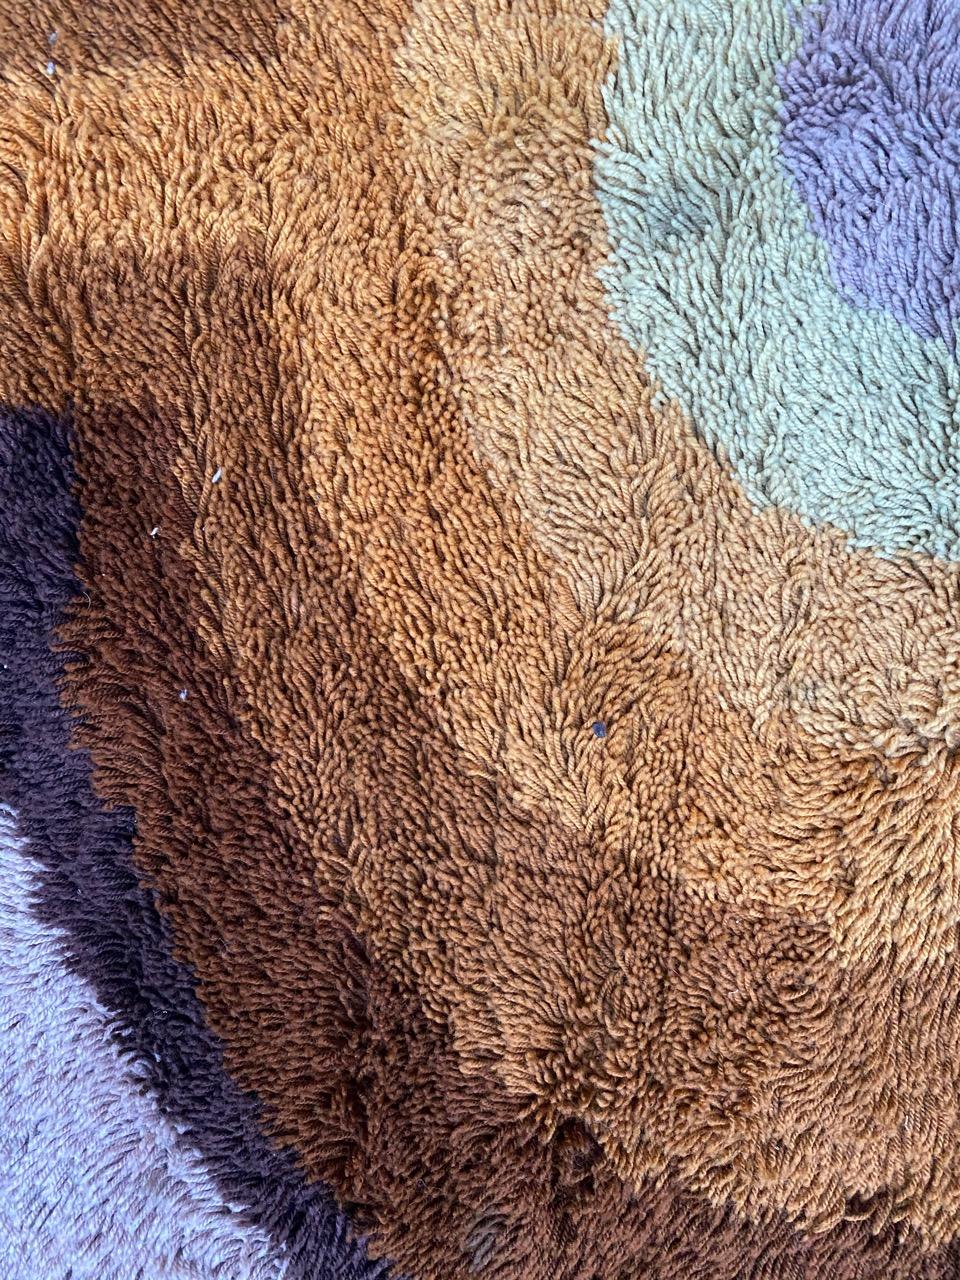 Schöne moderne Teppich wahrscheinlich skandinavischen Teppich, mit einem schönen dekorativen Design und schöne Farben, mechanische Gewebe mit Wolle und Acryl Samt.

✨✨✨
